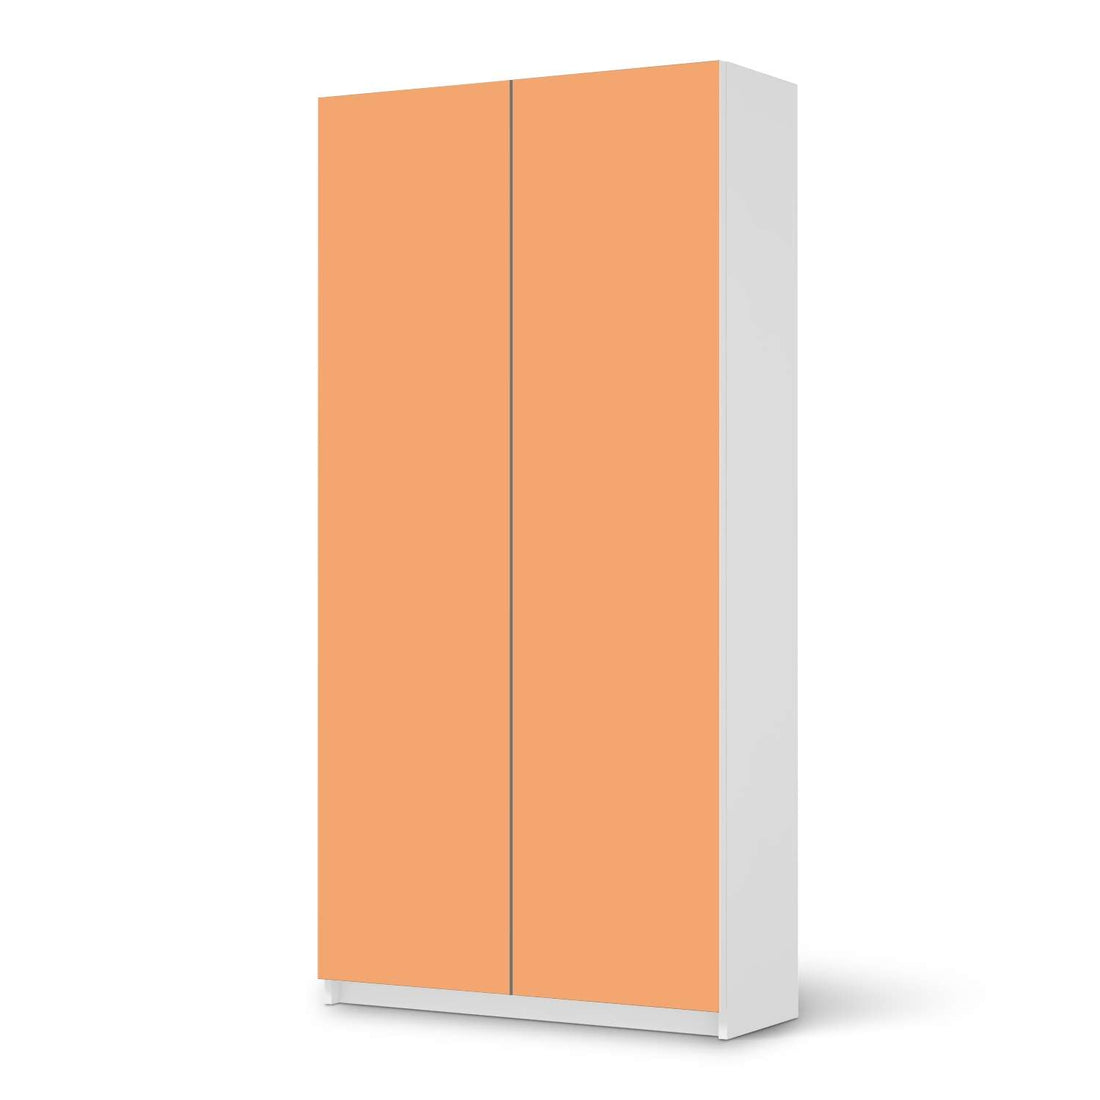 Klebefolie für Möbel Orange Light - IKEA Pax Schrank 201 cm Höhe - 2 Türen - weiss